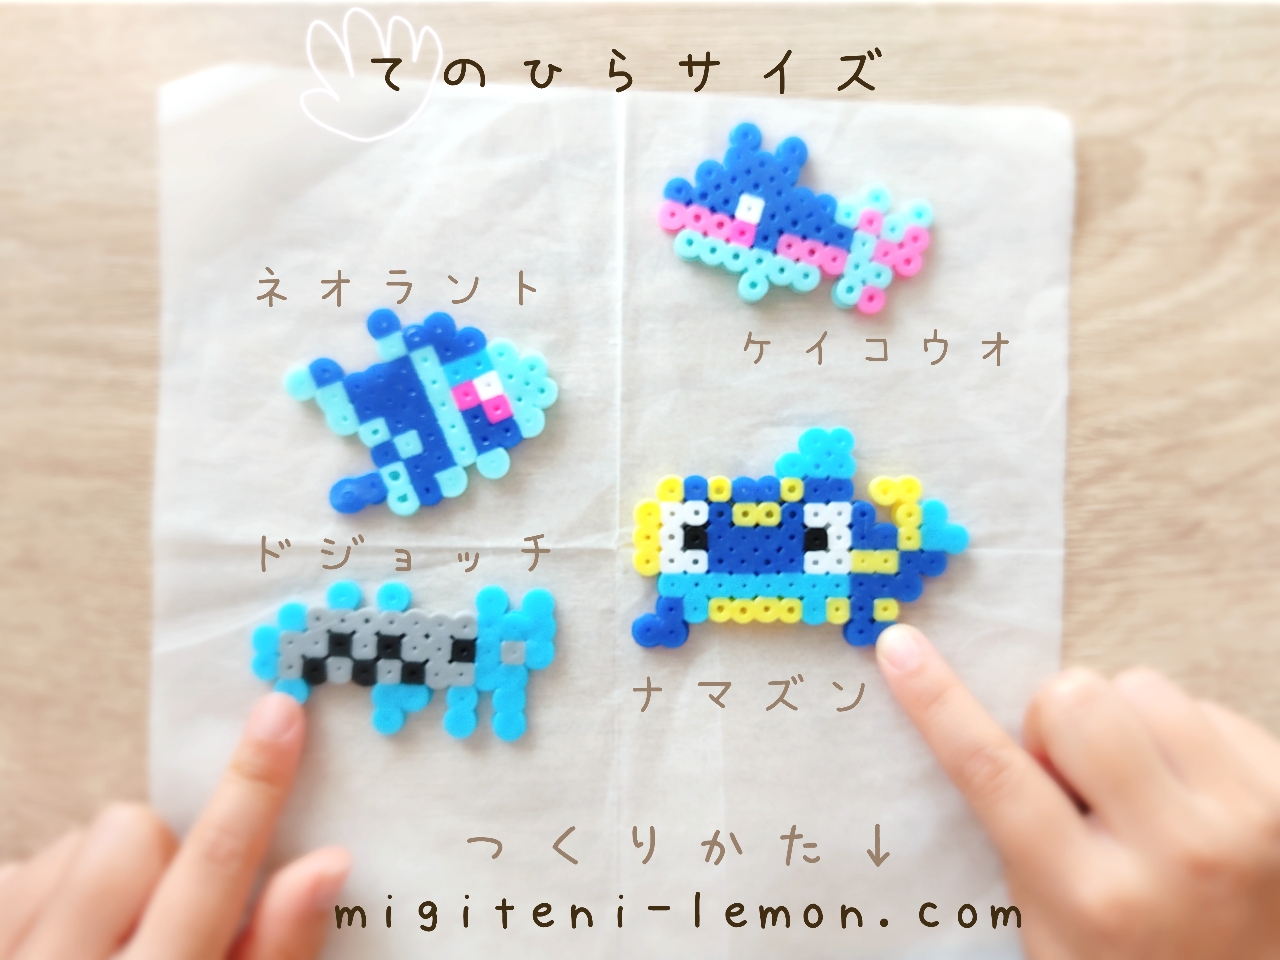 dojotchi-barboach-namazun-whiscash-sinnoh-kawaii-pokemon-handmade-iron-beads-small-square-free-zuan-blue-kids-sinnoh